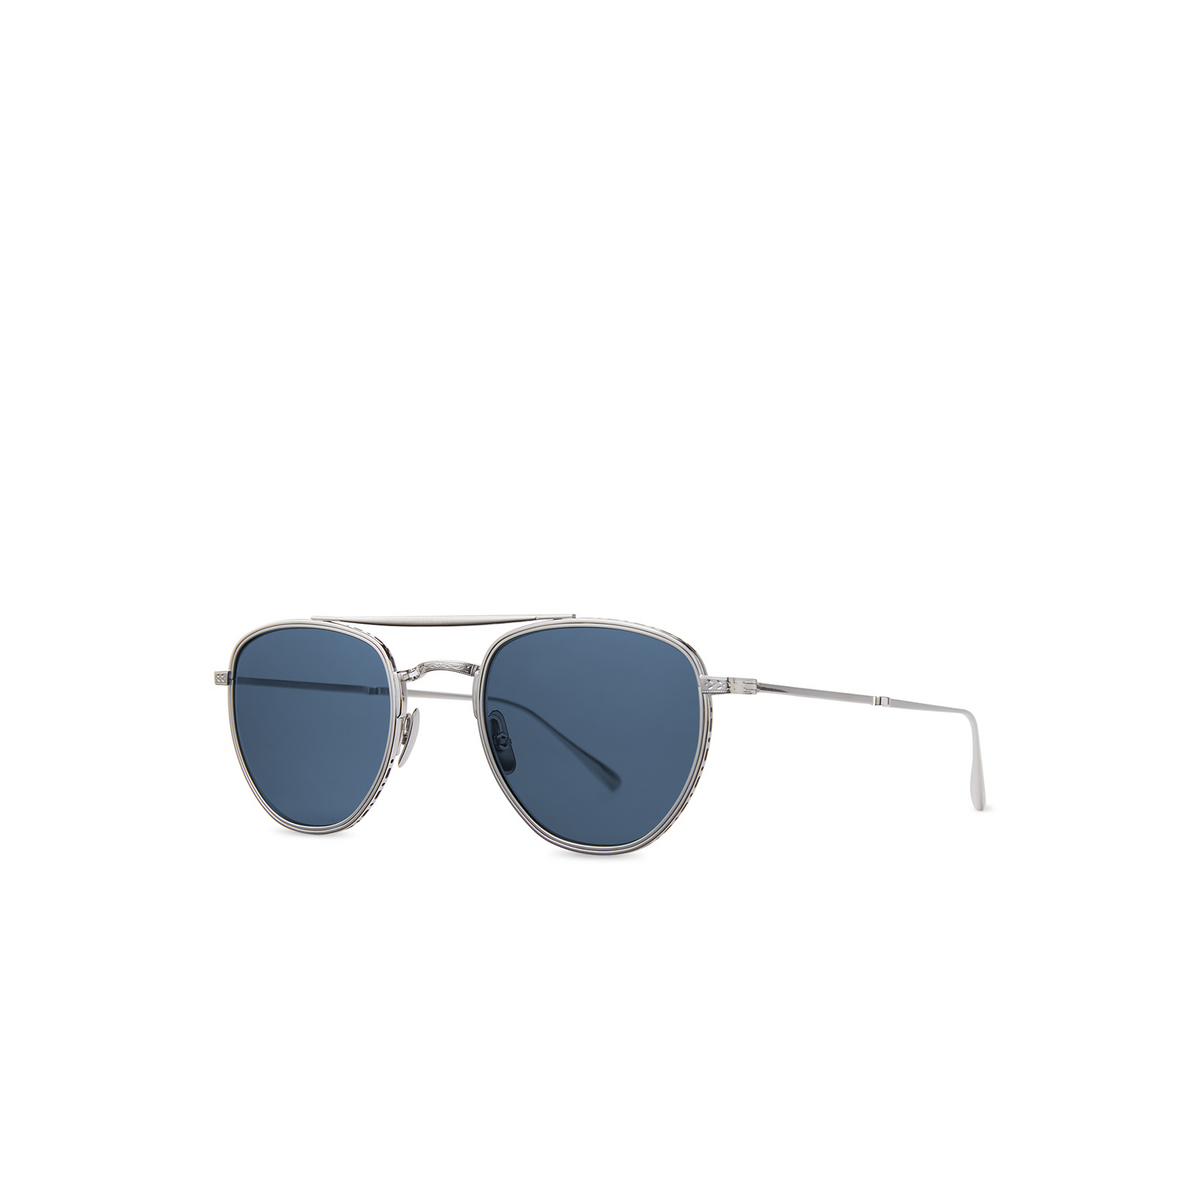 Mr. Leight® Aviator Sunglasses: Roku Ii S color Platinum/blue Plt/blu - three-quarters view.